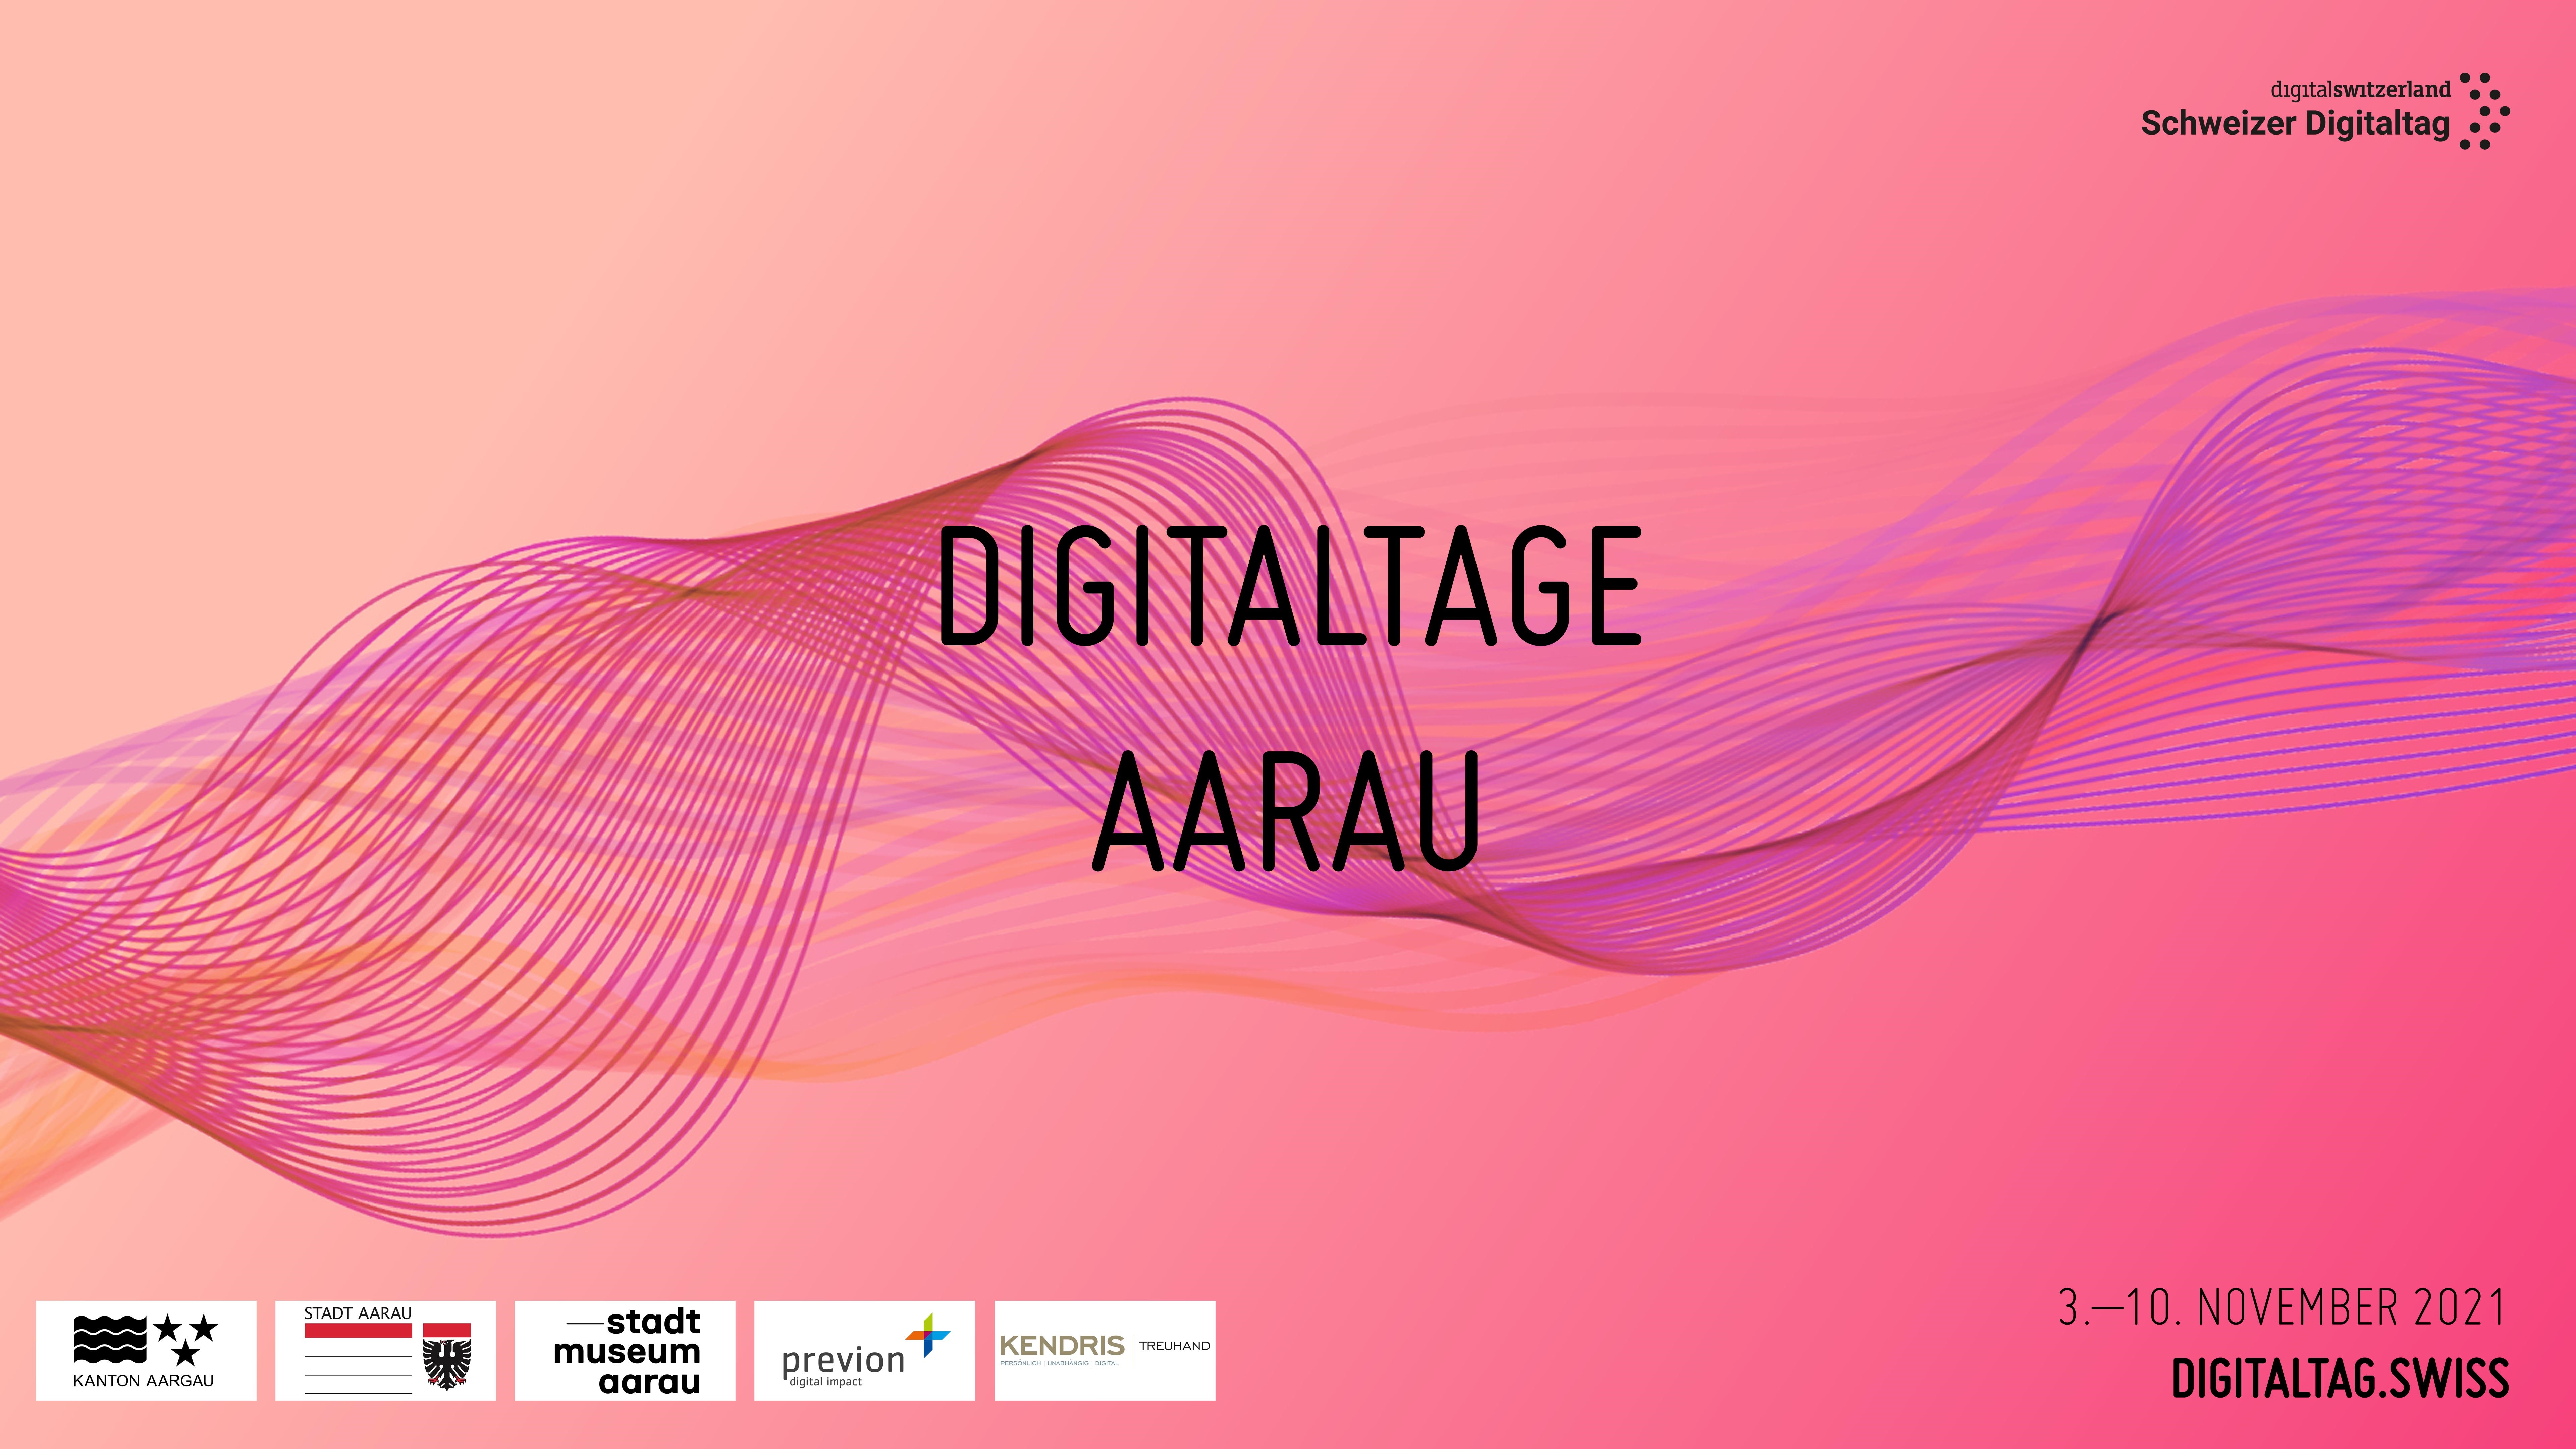 Digitaltage Aarau